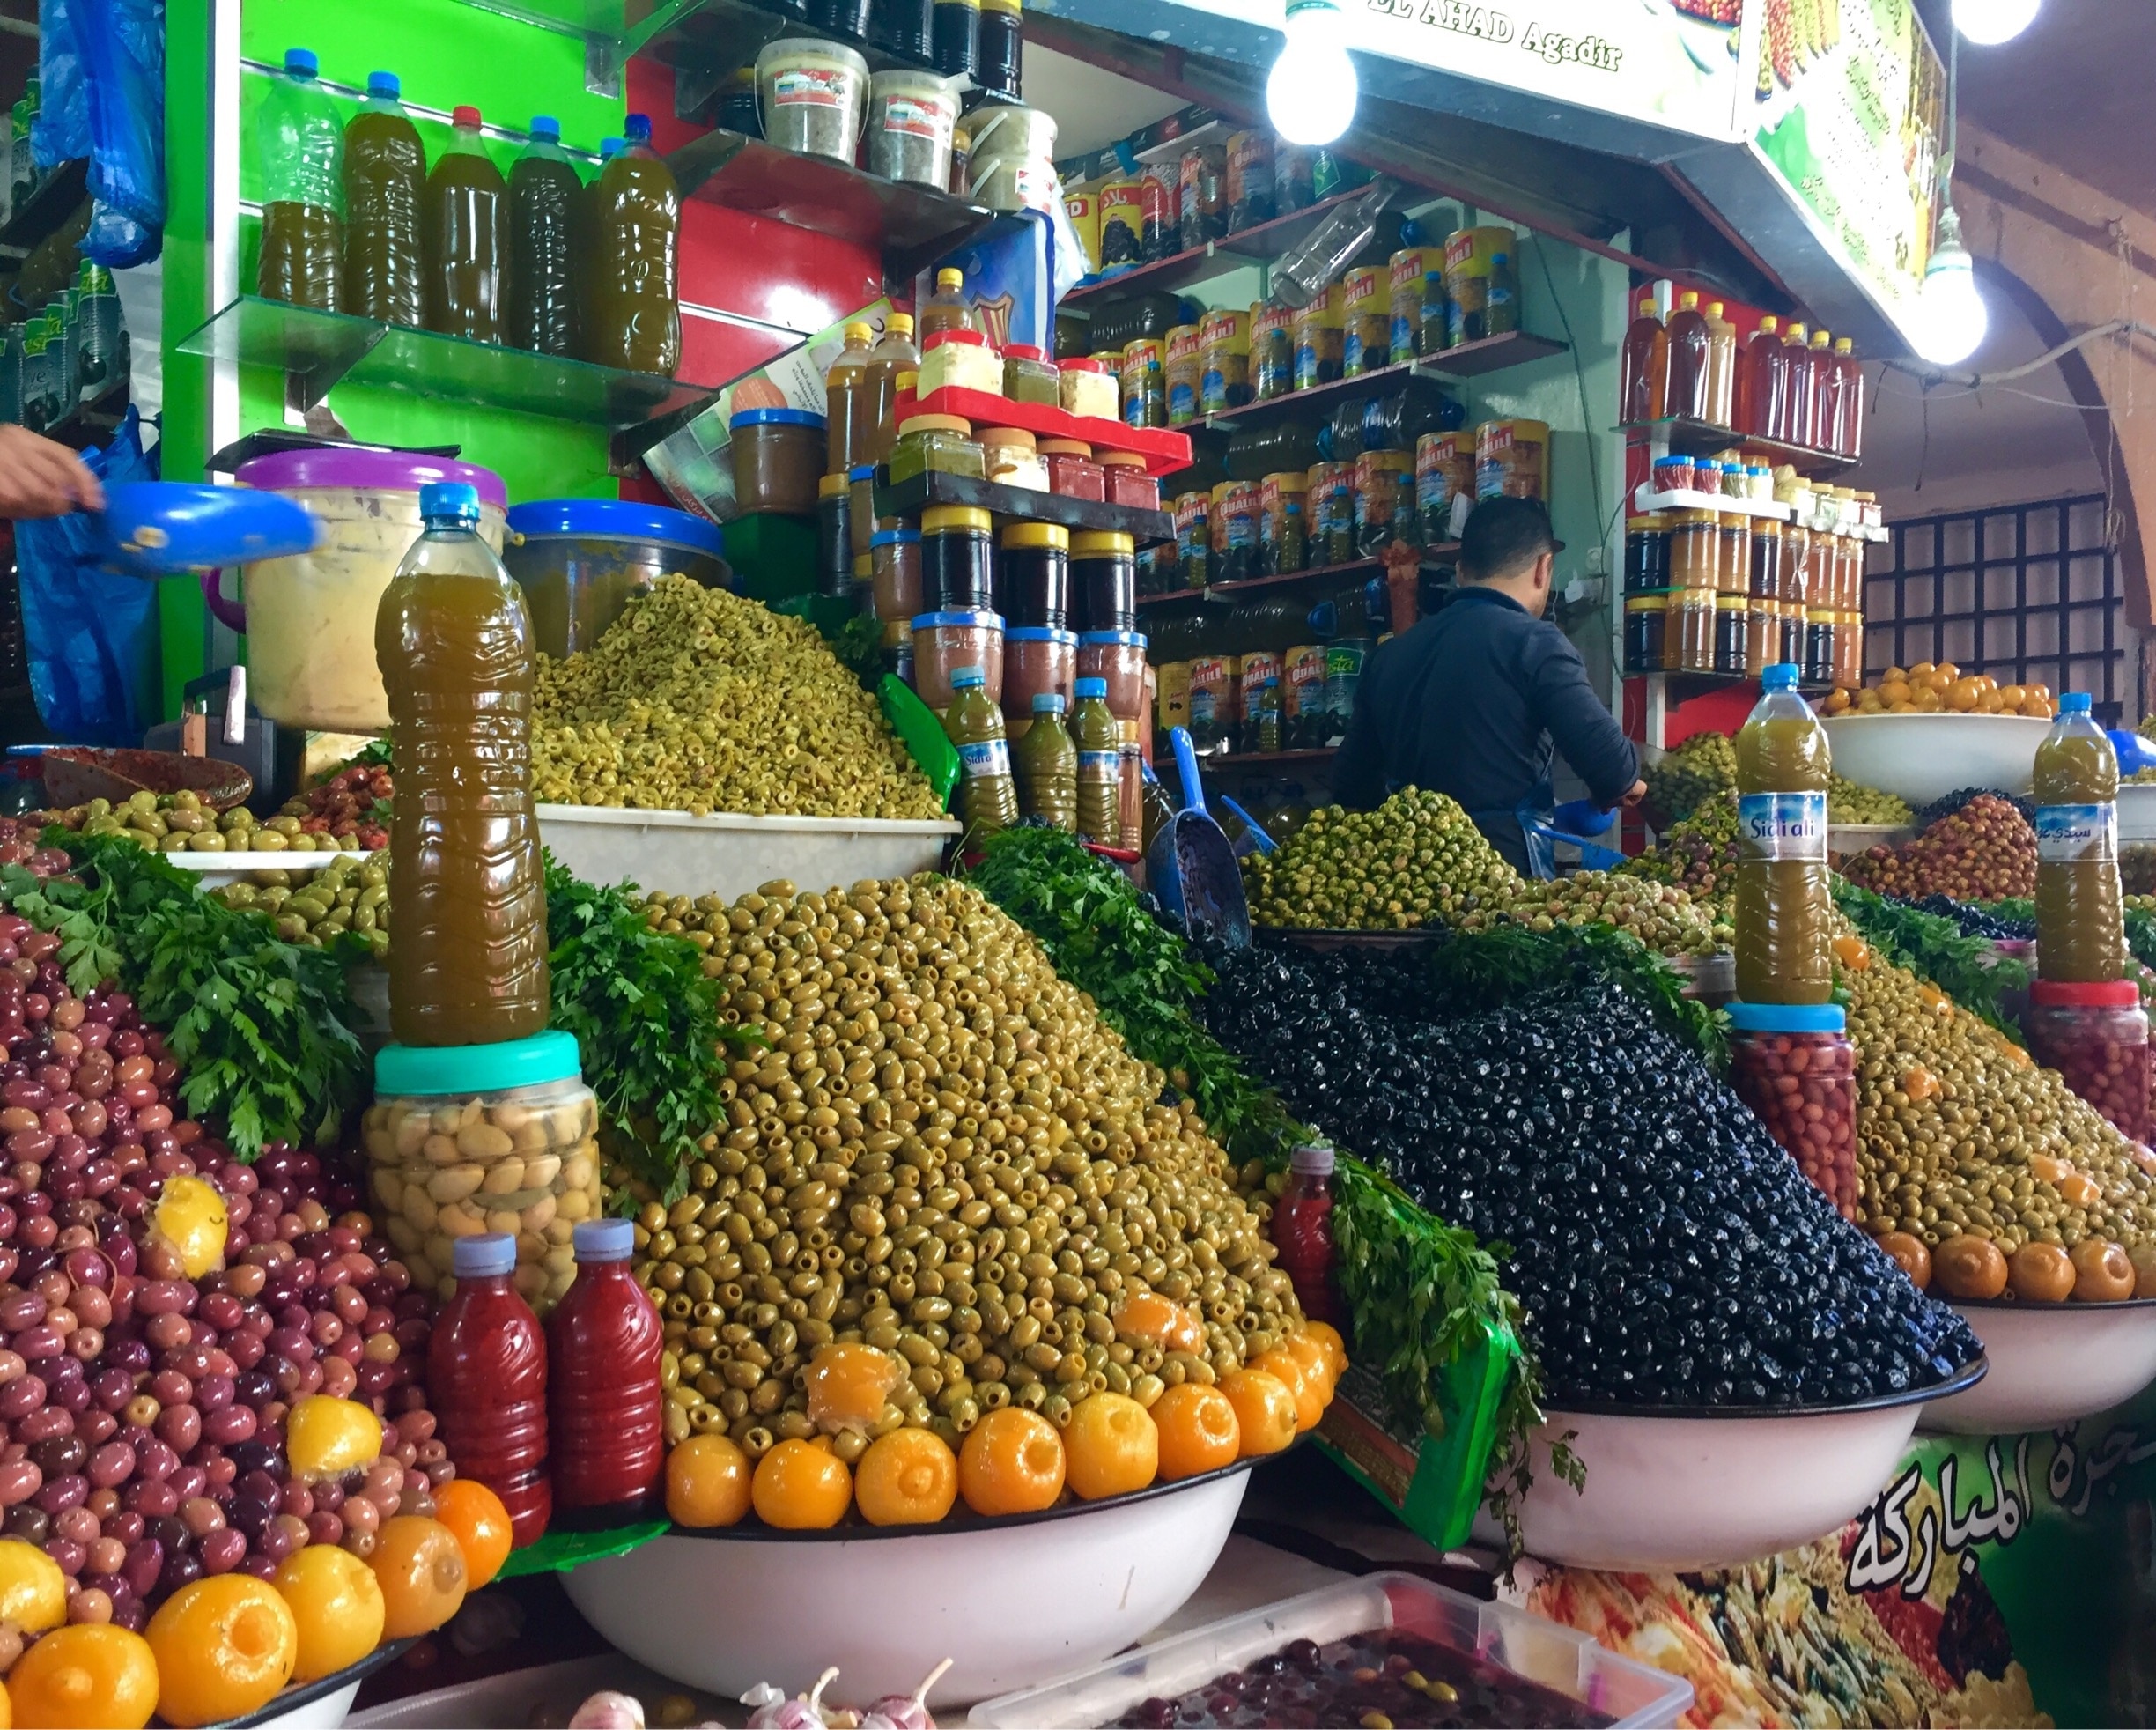 Olives
#market